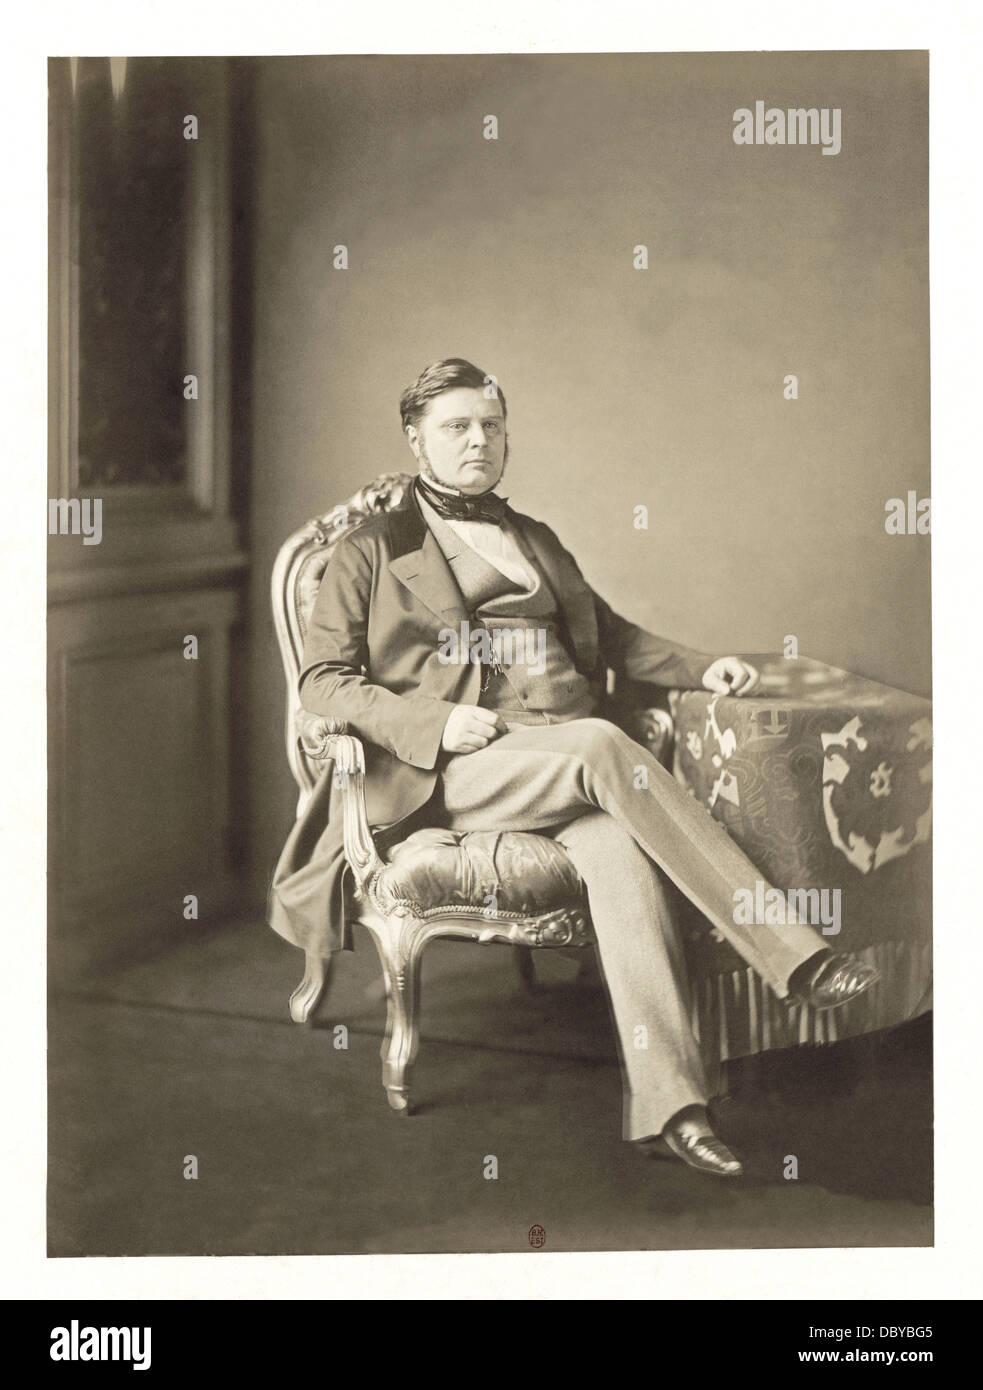 Comte Alexandre Joseph Colonna-Walewski (1810 - 1868), Ministre des affaires étrangères de Napoléon III, ici photographié comme figuratif Banque D'Images